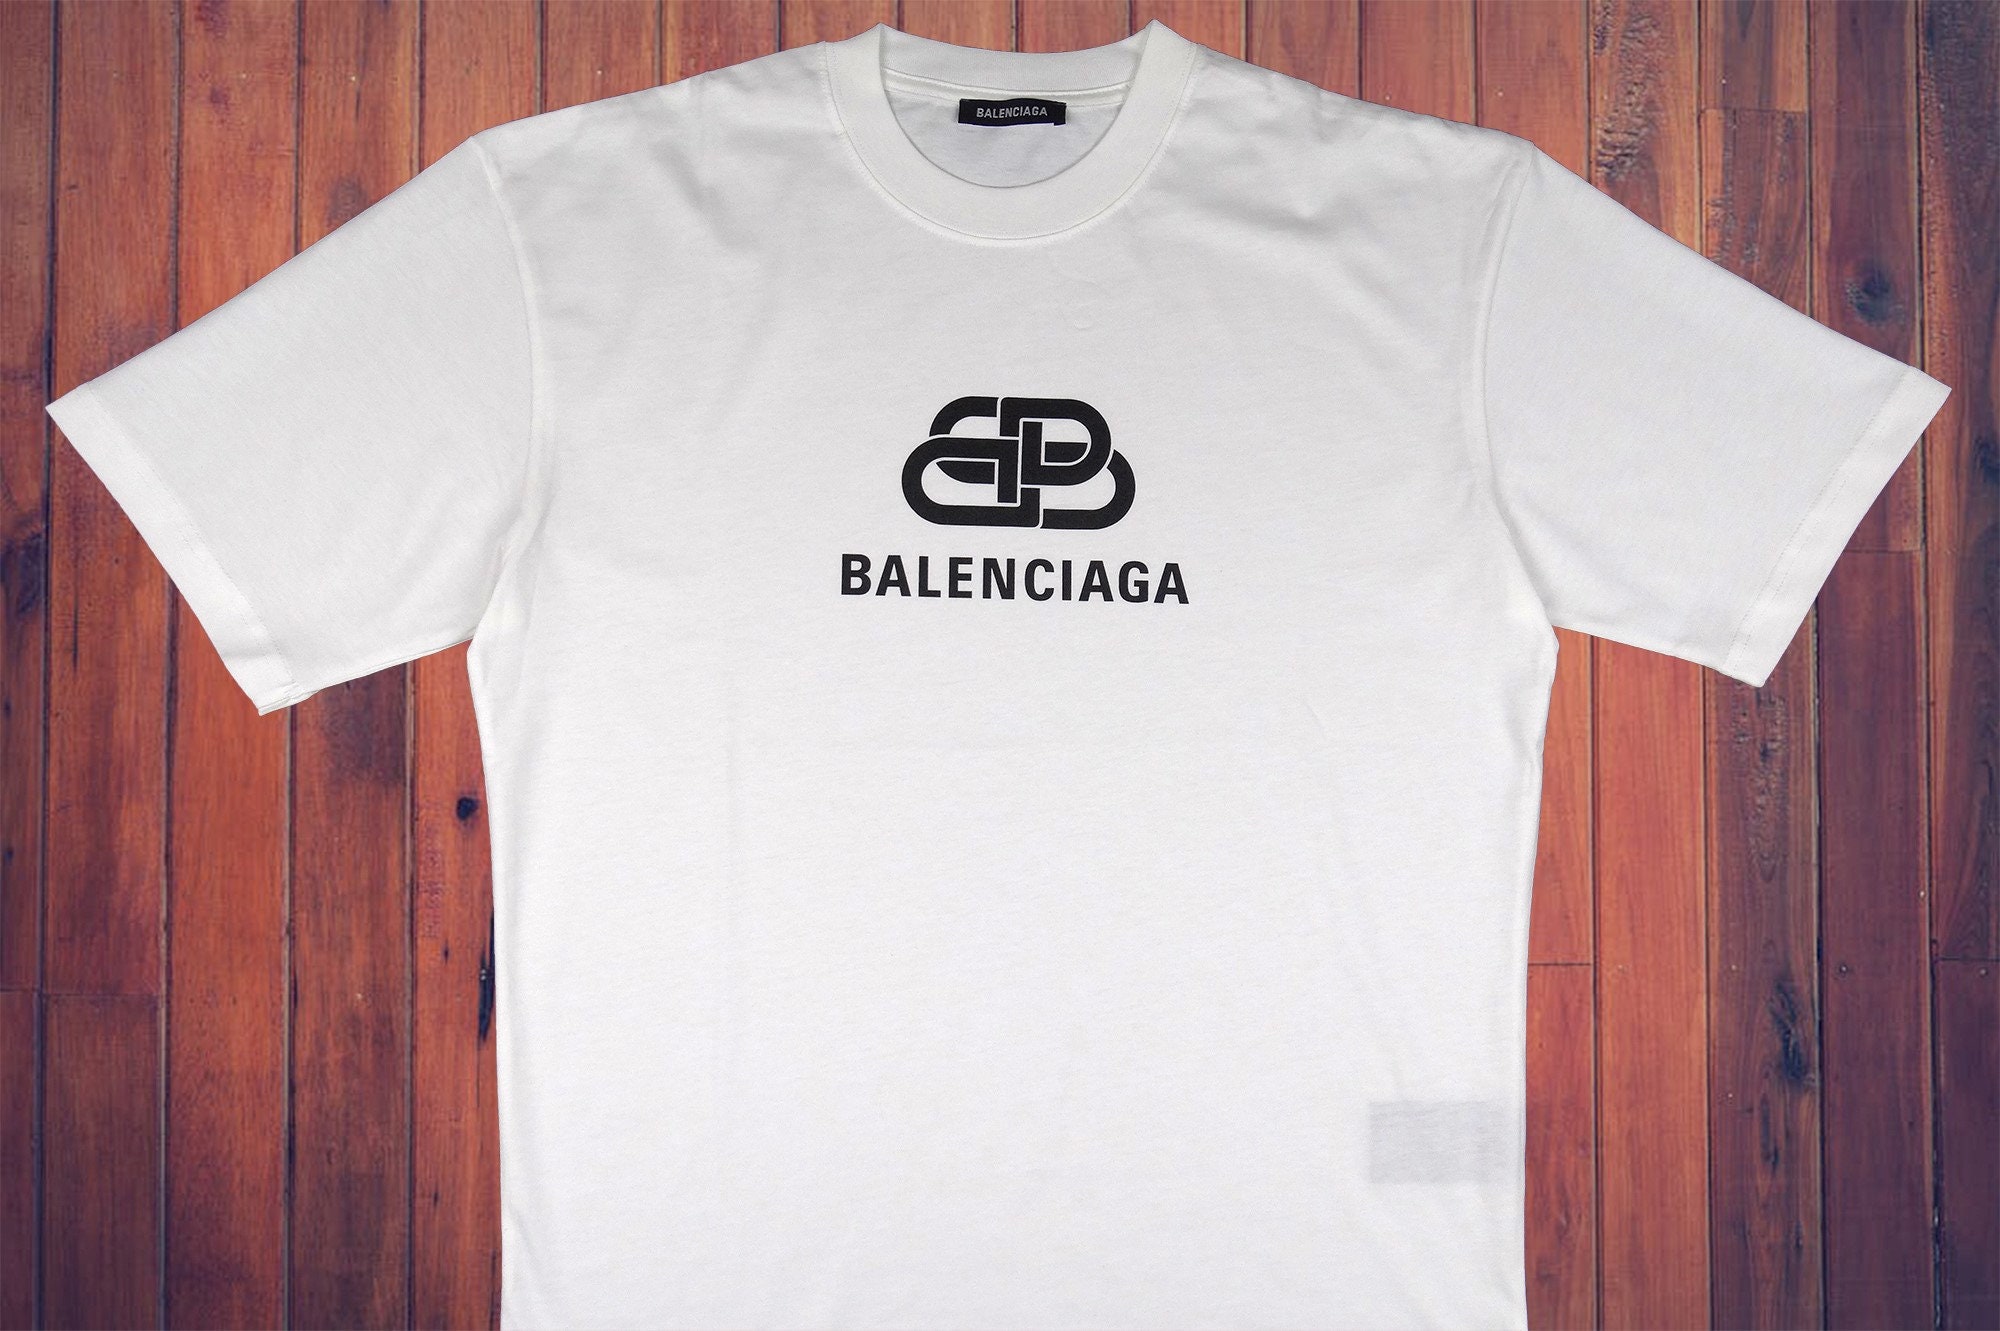 Balenciaga T-shirt with logo, Men's Clothing